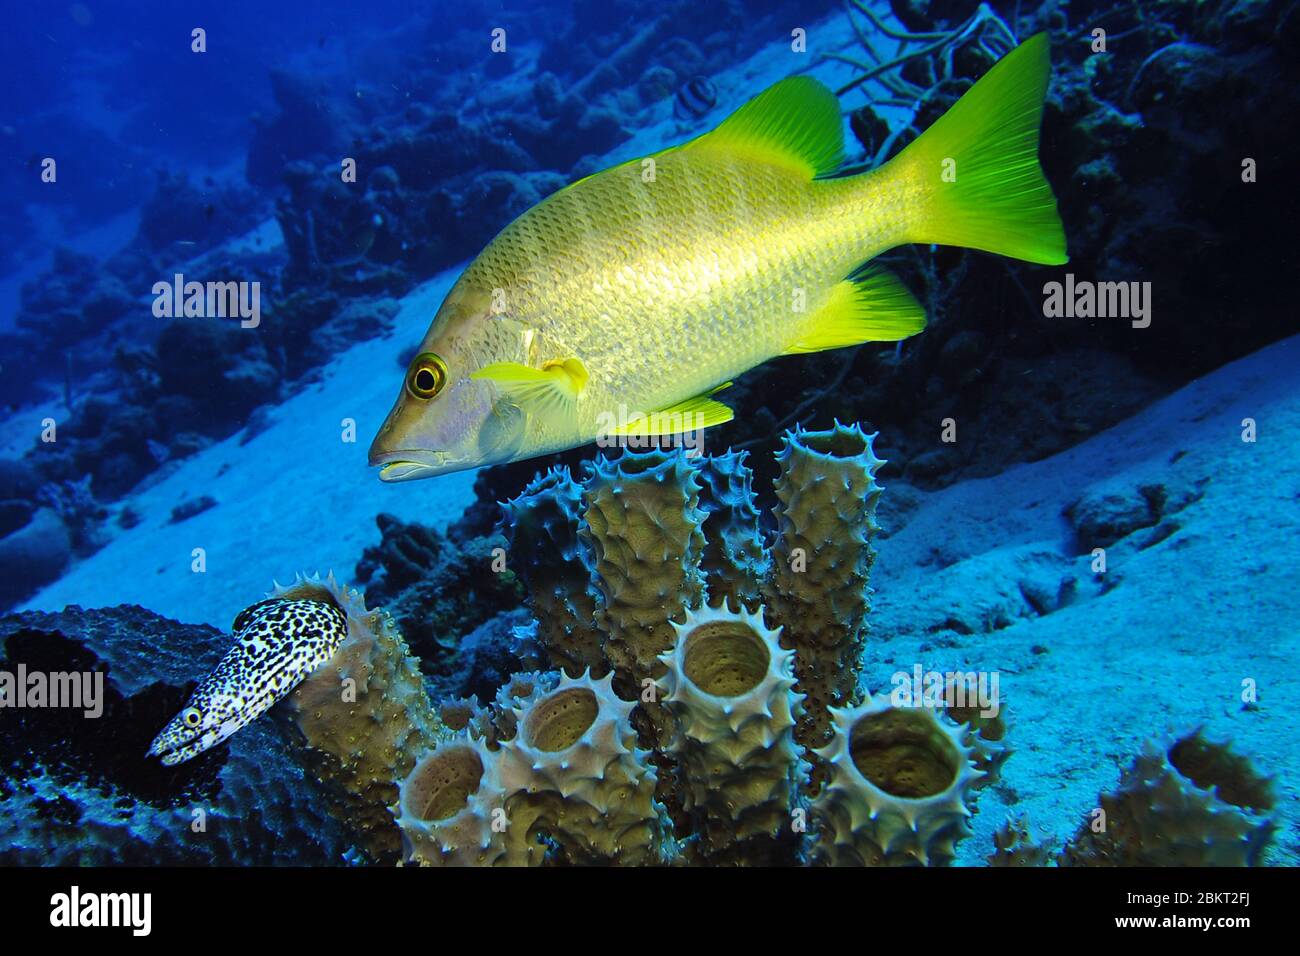 Il dentice giallo sopra le spugne del tubo e un anguilla macchiata nera che esce da una spugna del tubo nel mare dei caraibi, Bonaire, isola, caraibico Foto Stock